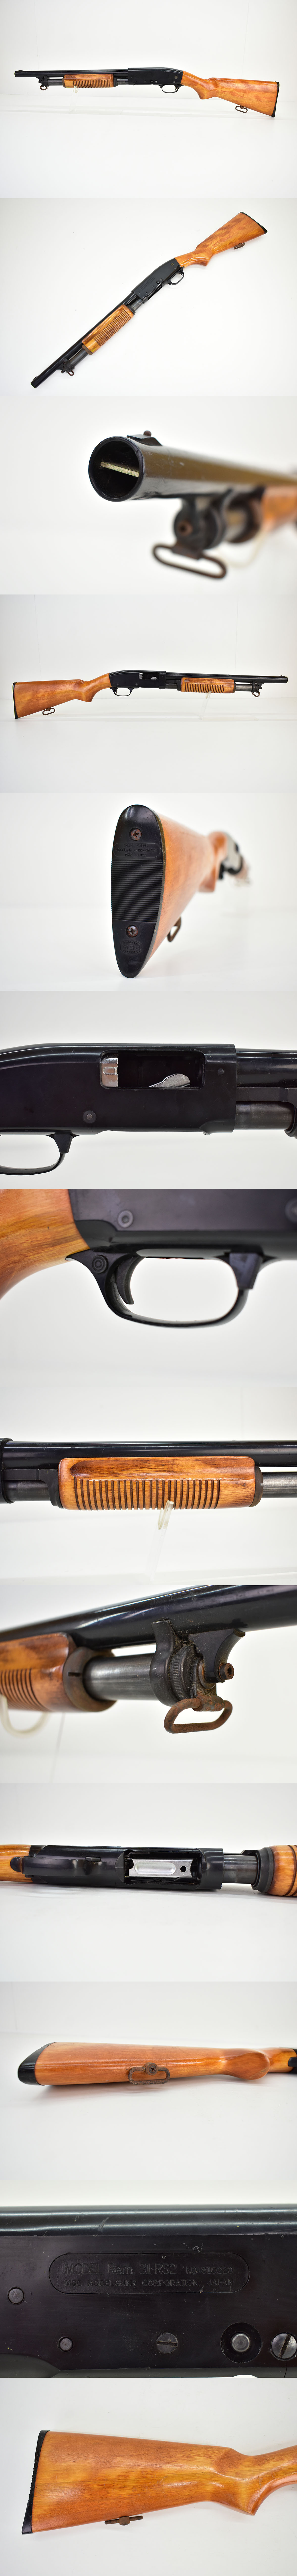 定番最新作MGC Remington M31 RS2 モデルガン [ショットガン][レミントンM31][樹脂製]M モデルガン